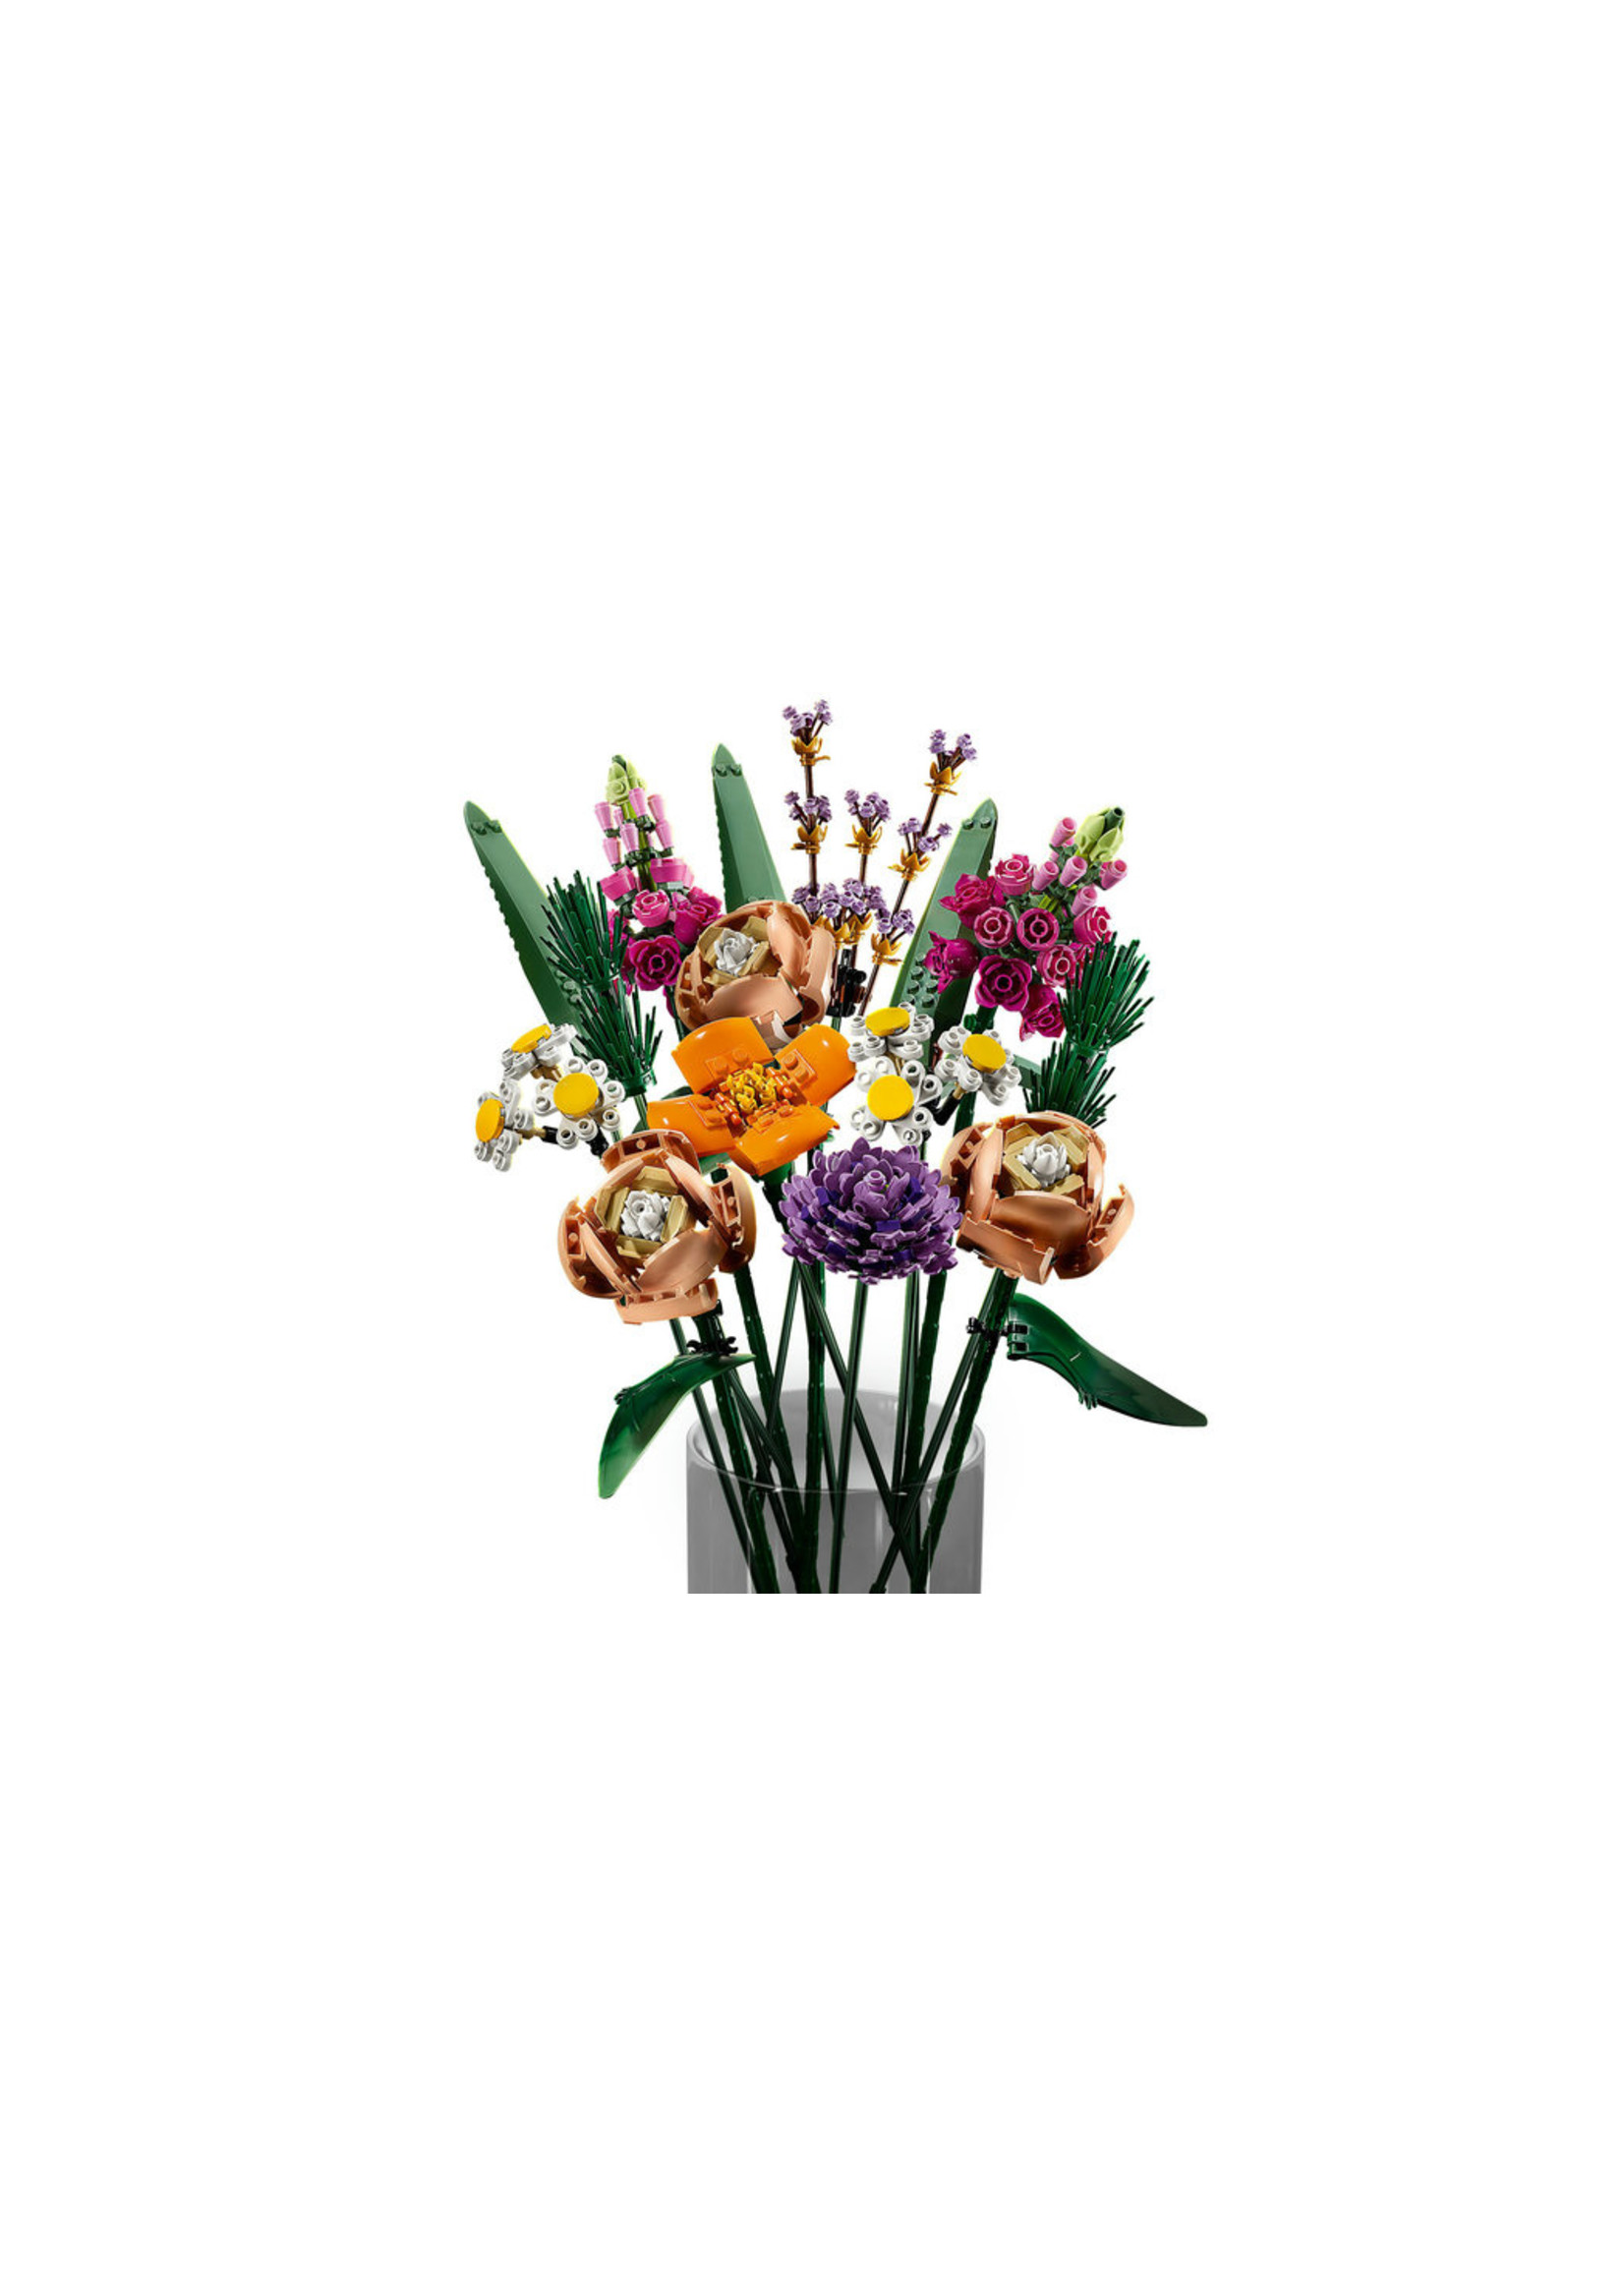 Lego 10280 - Flower Bouquet - Hub Hobby